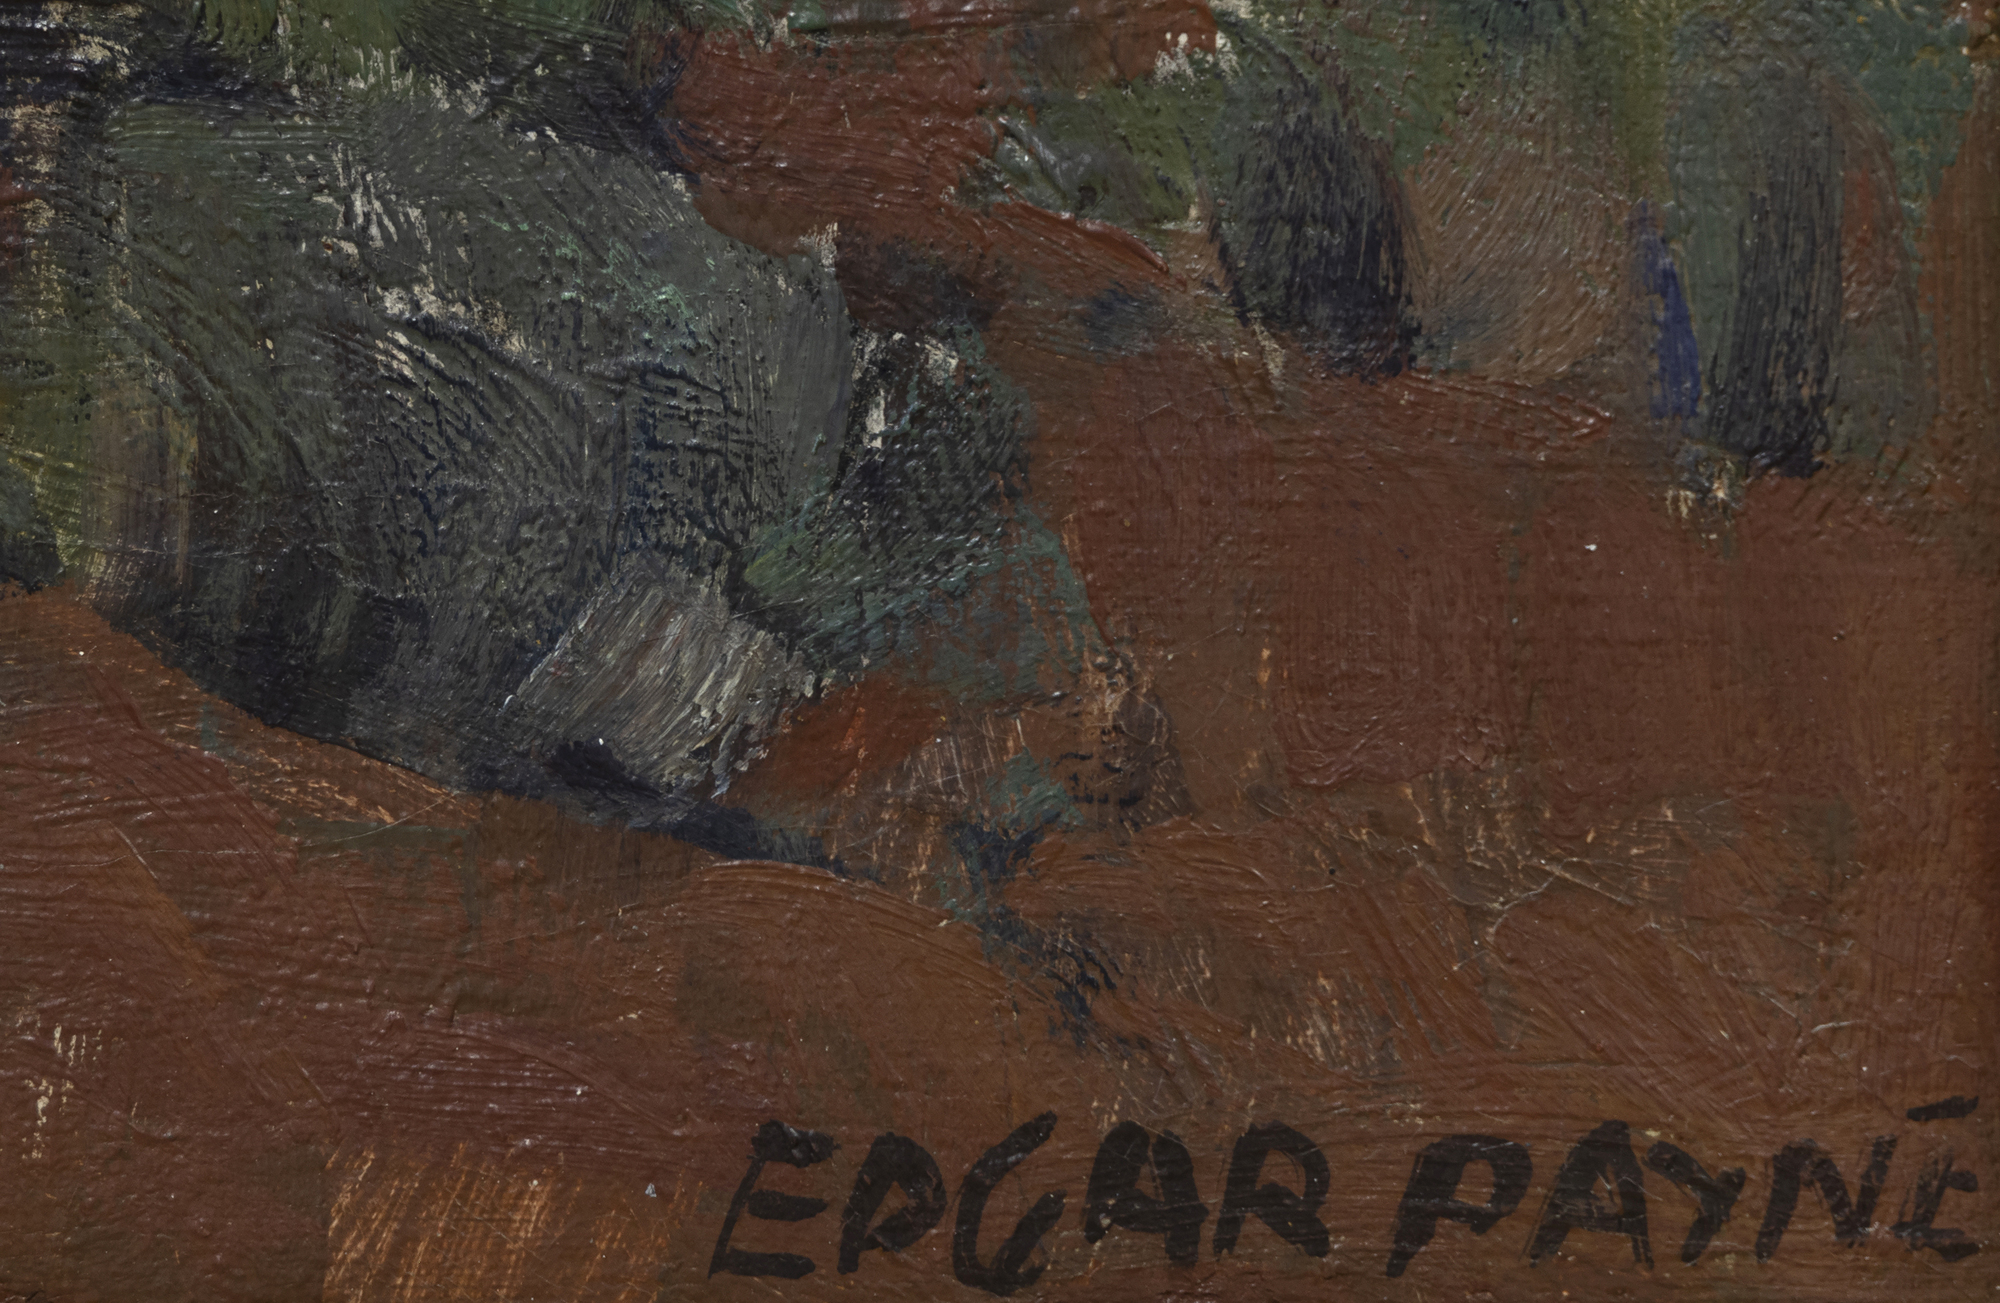 EDGAR ALWIN PAYNE - Navajos en descanso - óleo sobre lienzo - 19 1/2 x 23 1/2 pulg.